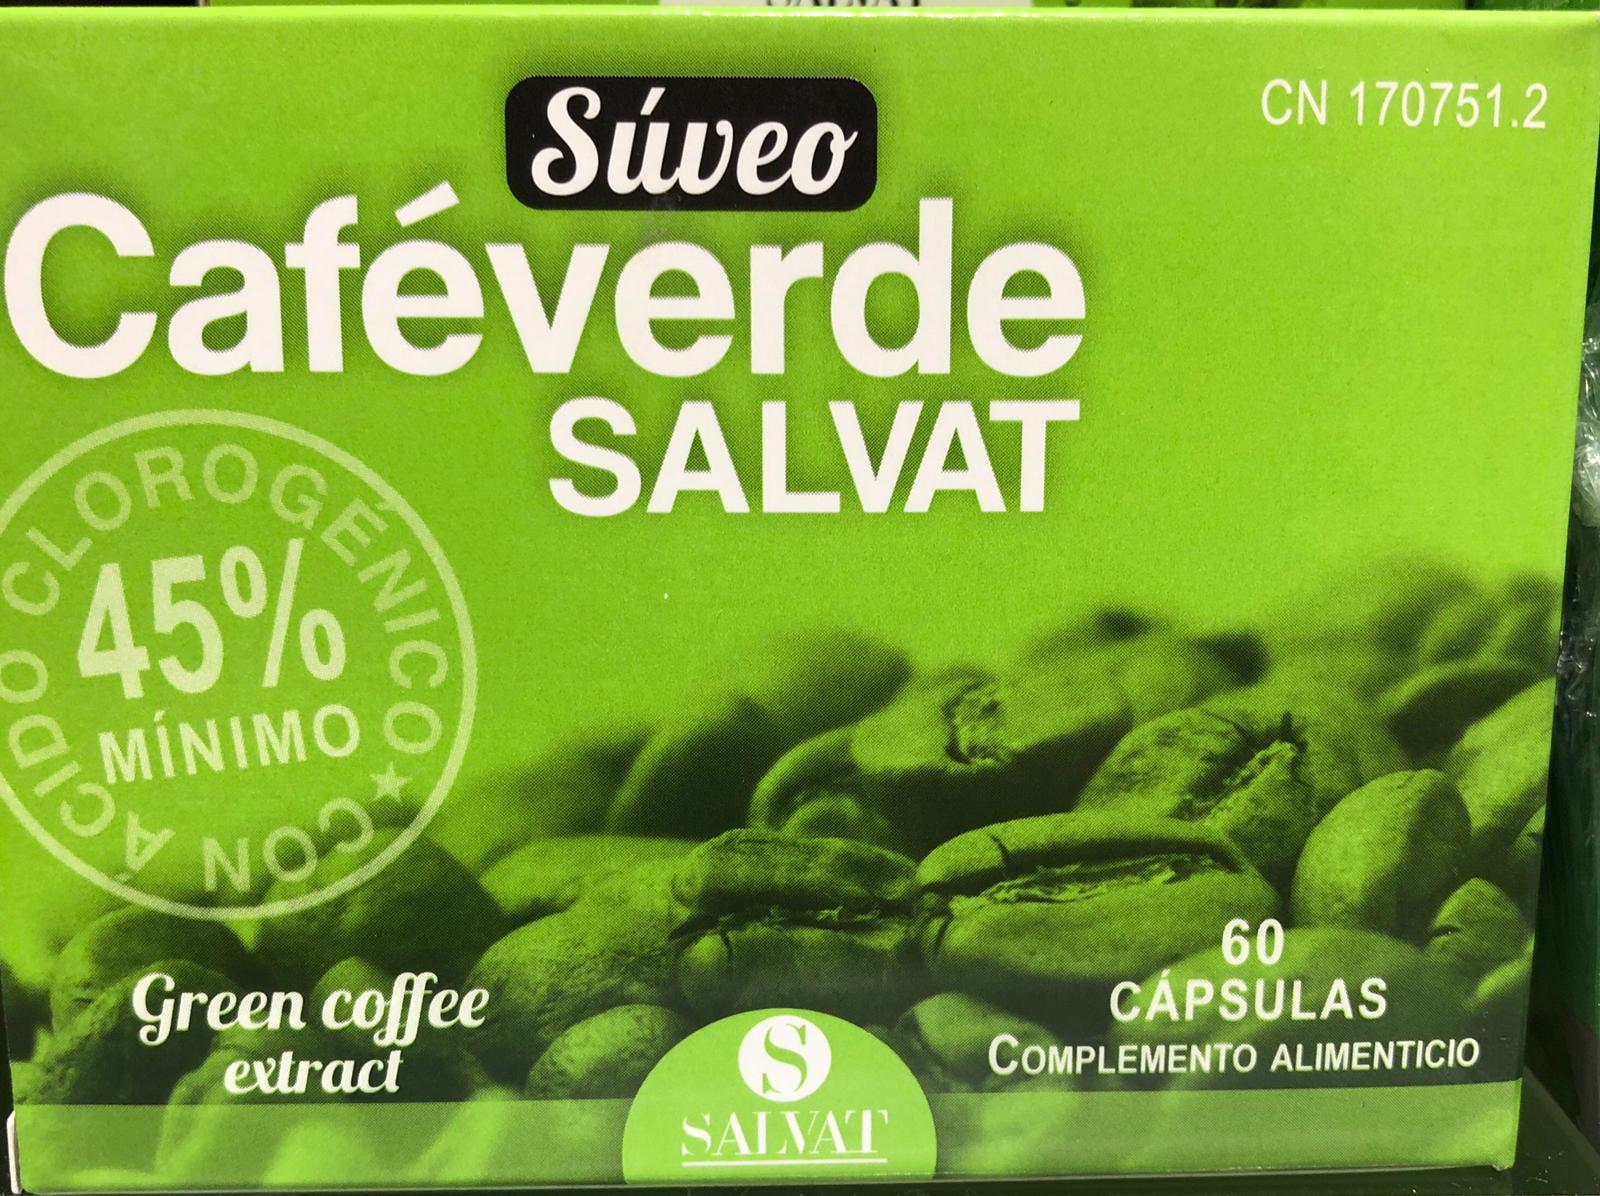 Súveo Café verde Salvat con ácido clorogénico complemento para perder peso y eliminar grasa. Gracias al extracto de café verde rico en ácido clorogénico